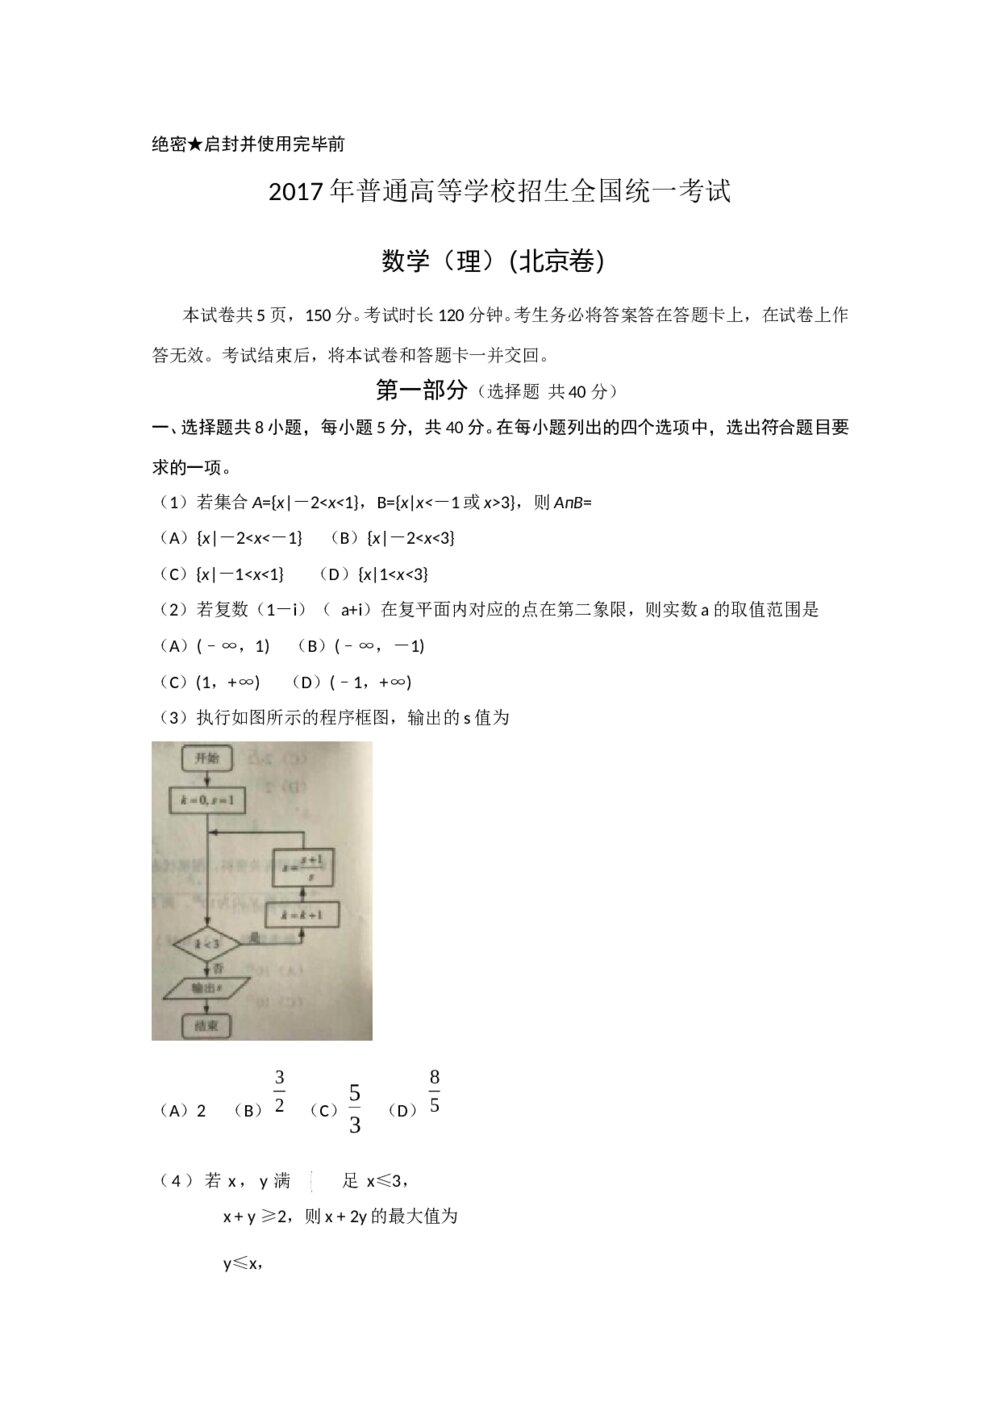 2017年北京高考数学(理科)试题试卷+答案(word版)